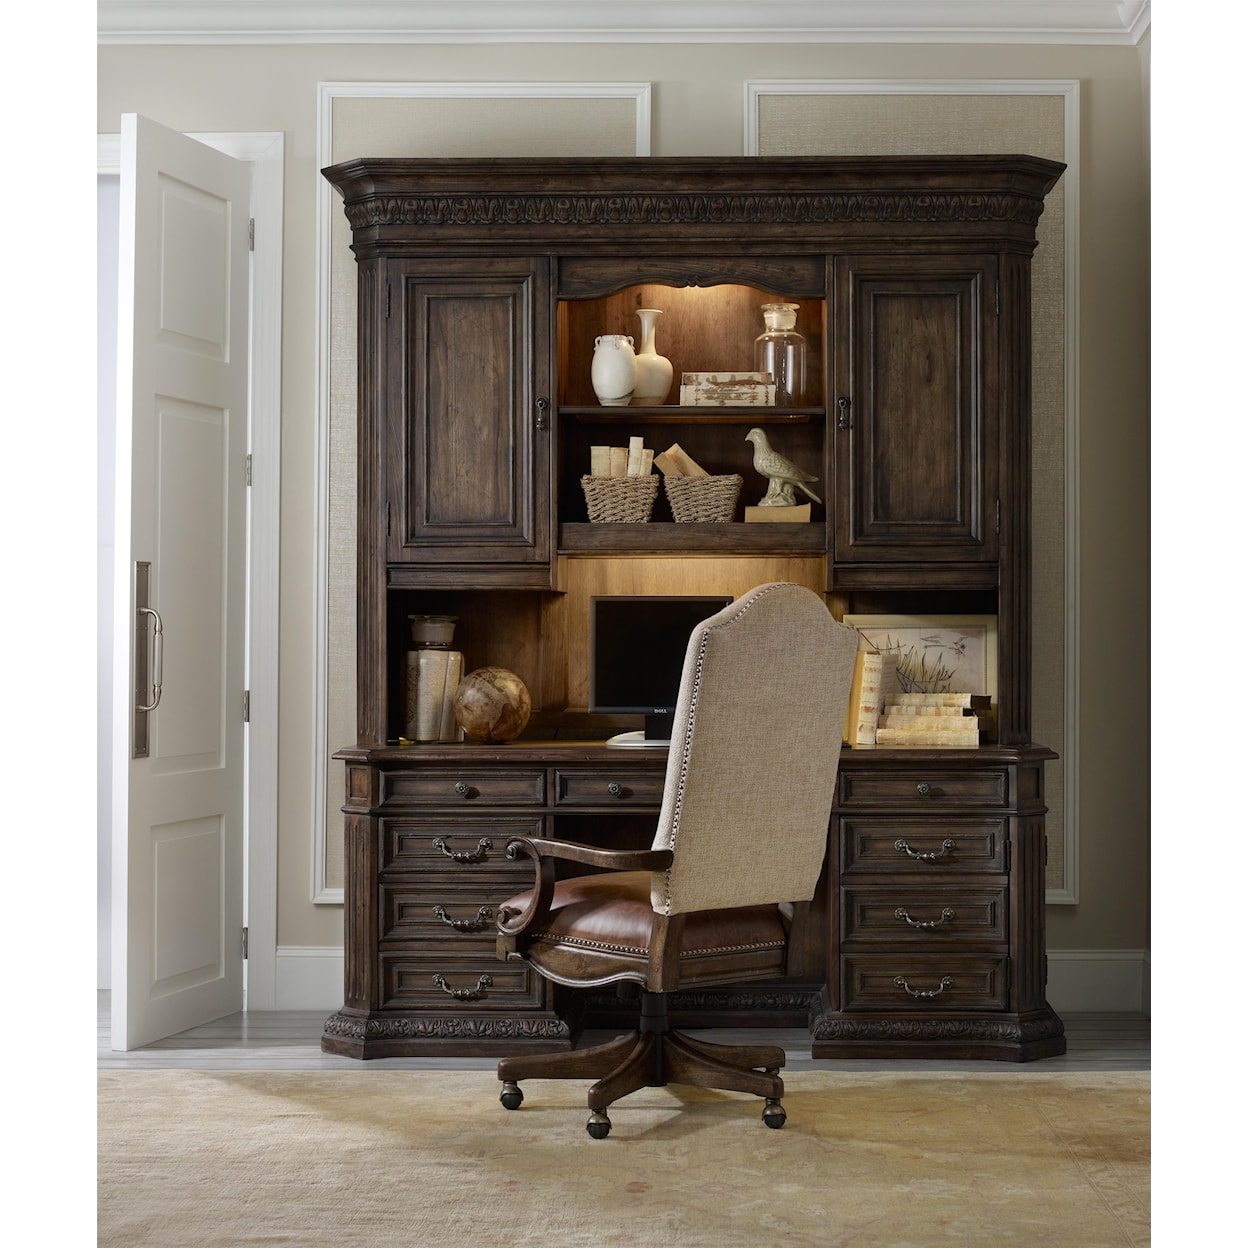 Hooker Furniture Rhapsody Tilt Swivel Office Chair